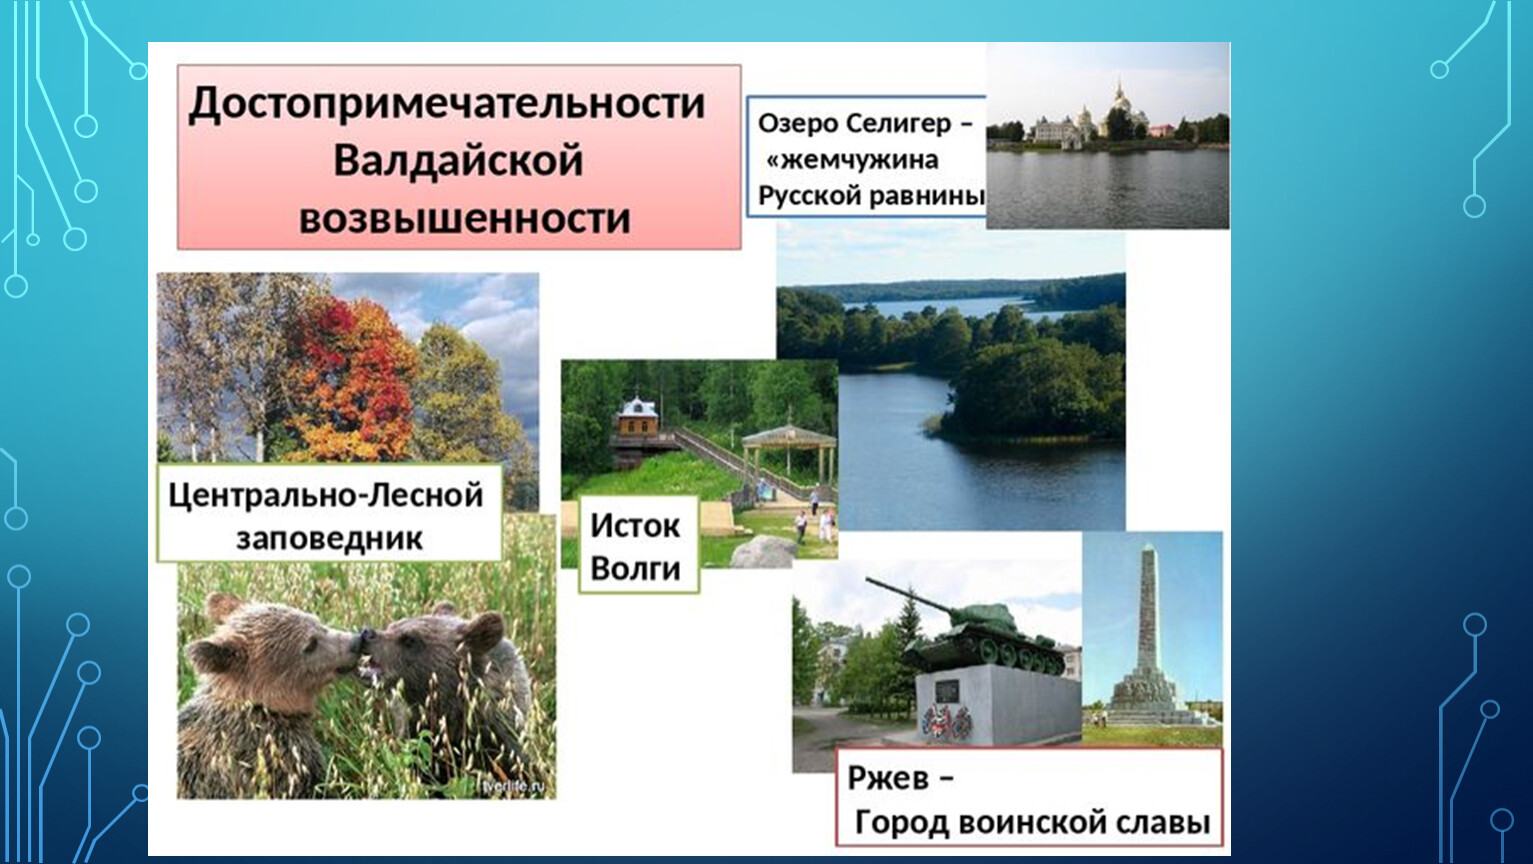 Озеро Селигер русская равнина